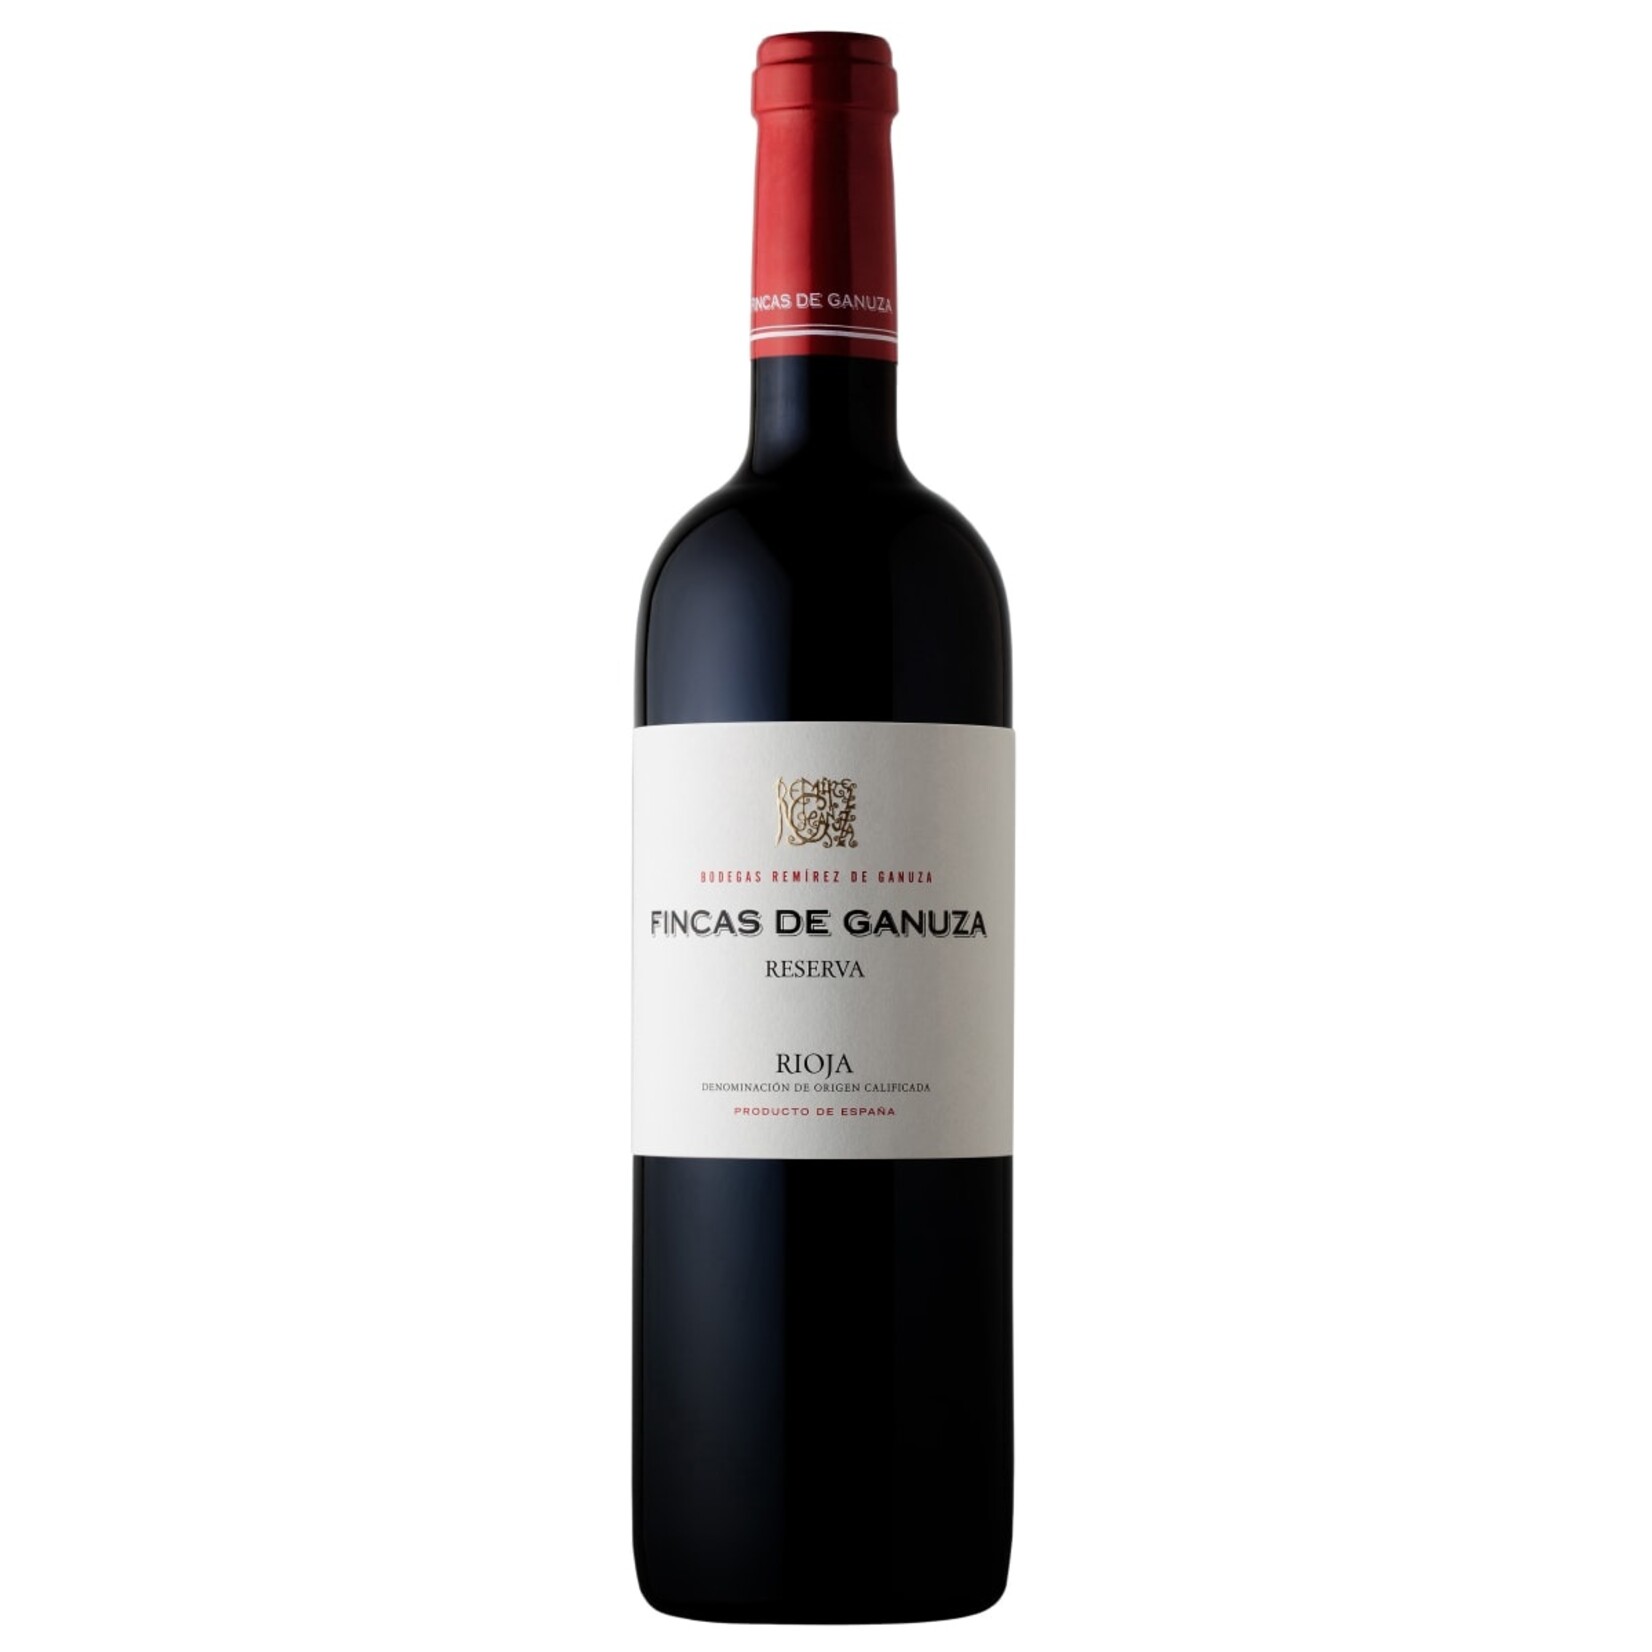 Wine Remirez de Ganuza Fincas de Ganuza Rioja Reserva 2015